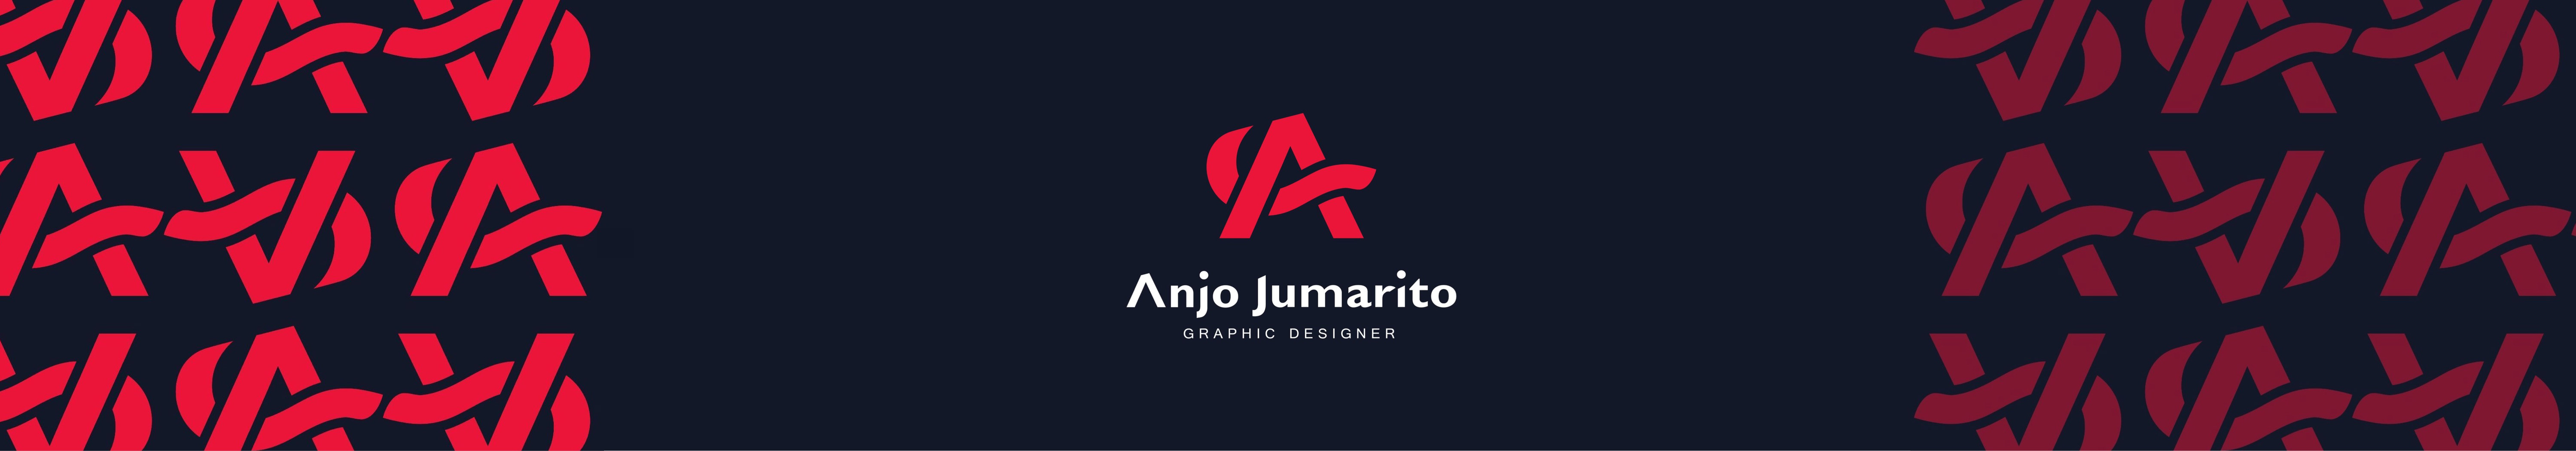 Bannière de profil de Anjo Jumarito